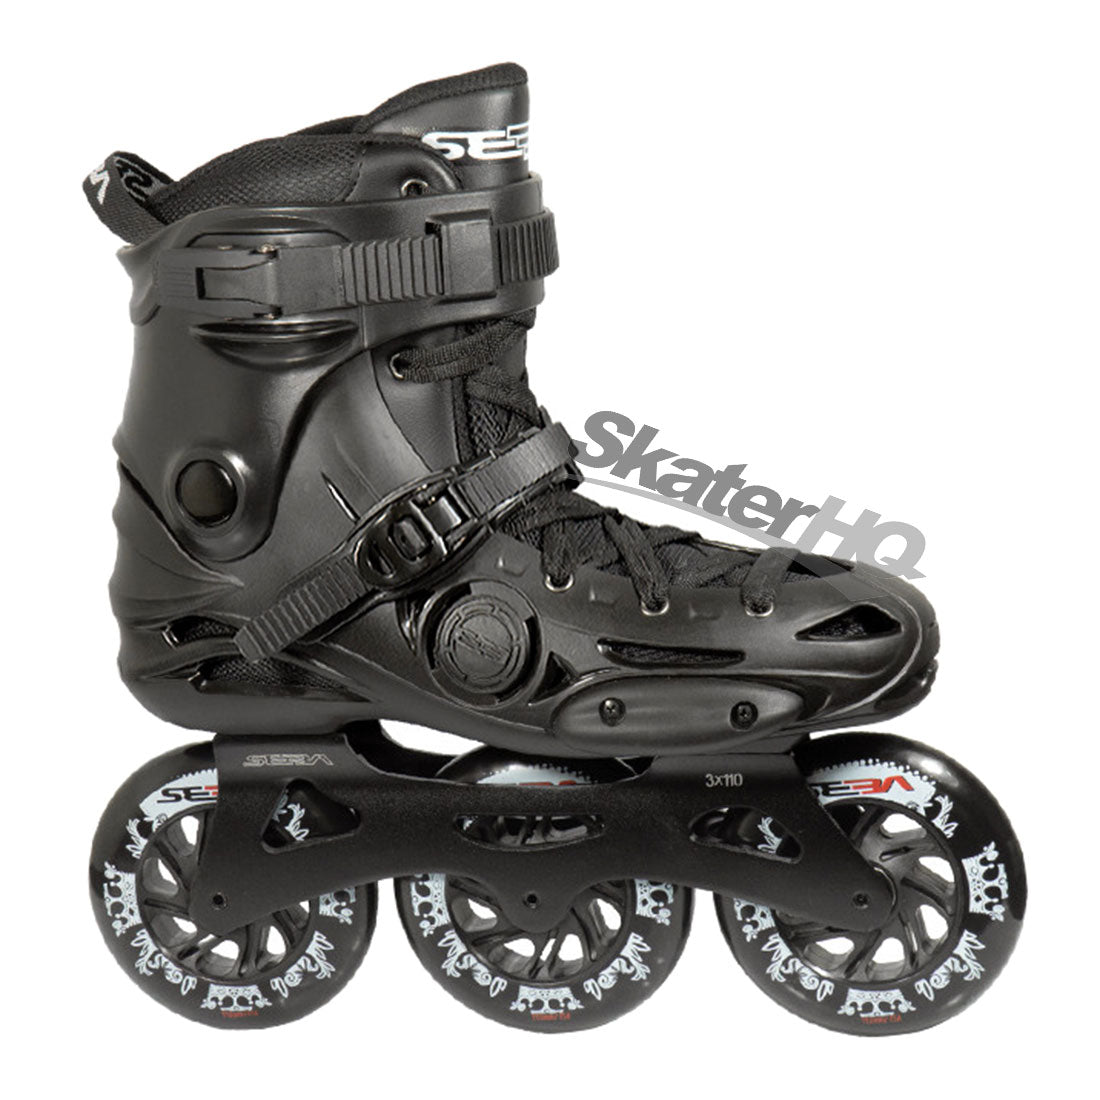 Seba E3 310 Premium Black - 10.5US EU44 Inline Rec Skates